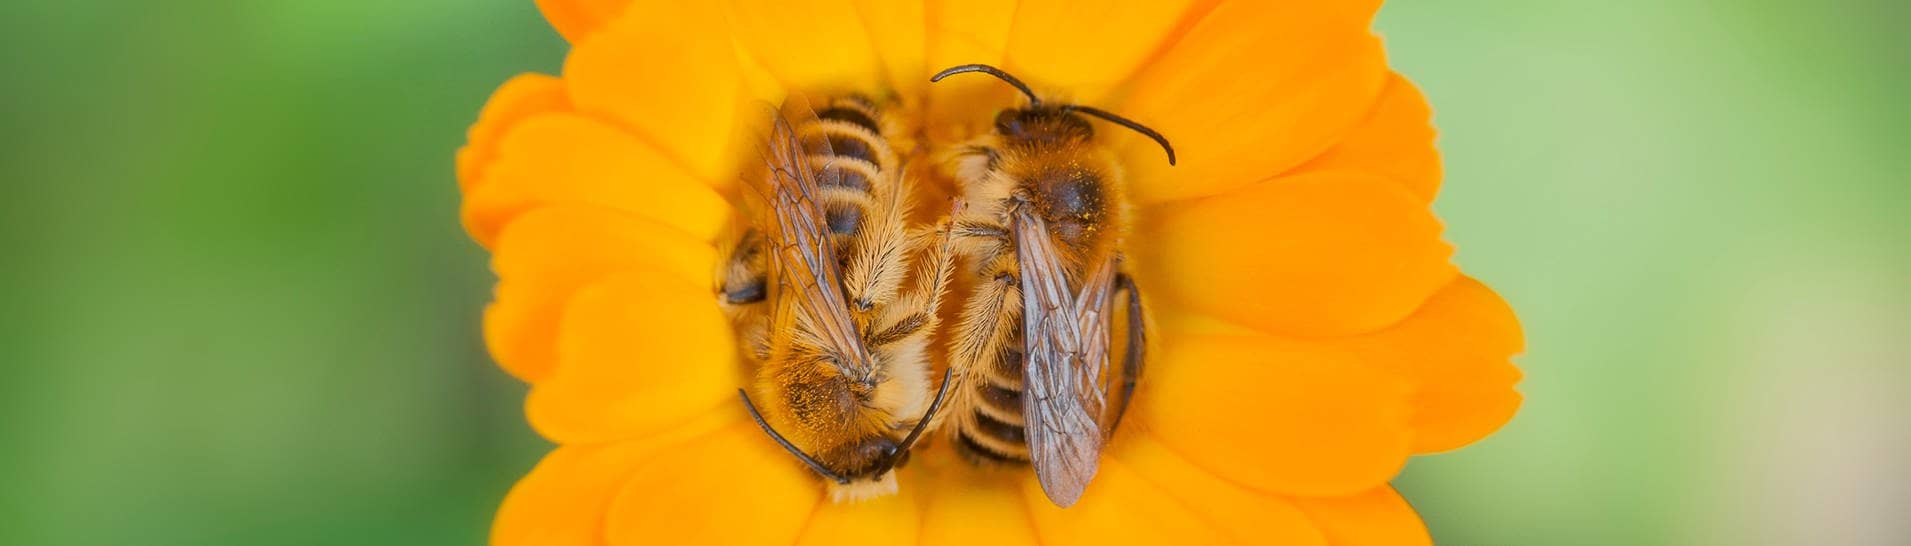 Bienen ruhen auf einer Ringelblume (Foto: Adobe Stock/Kodec)